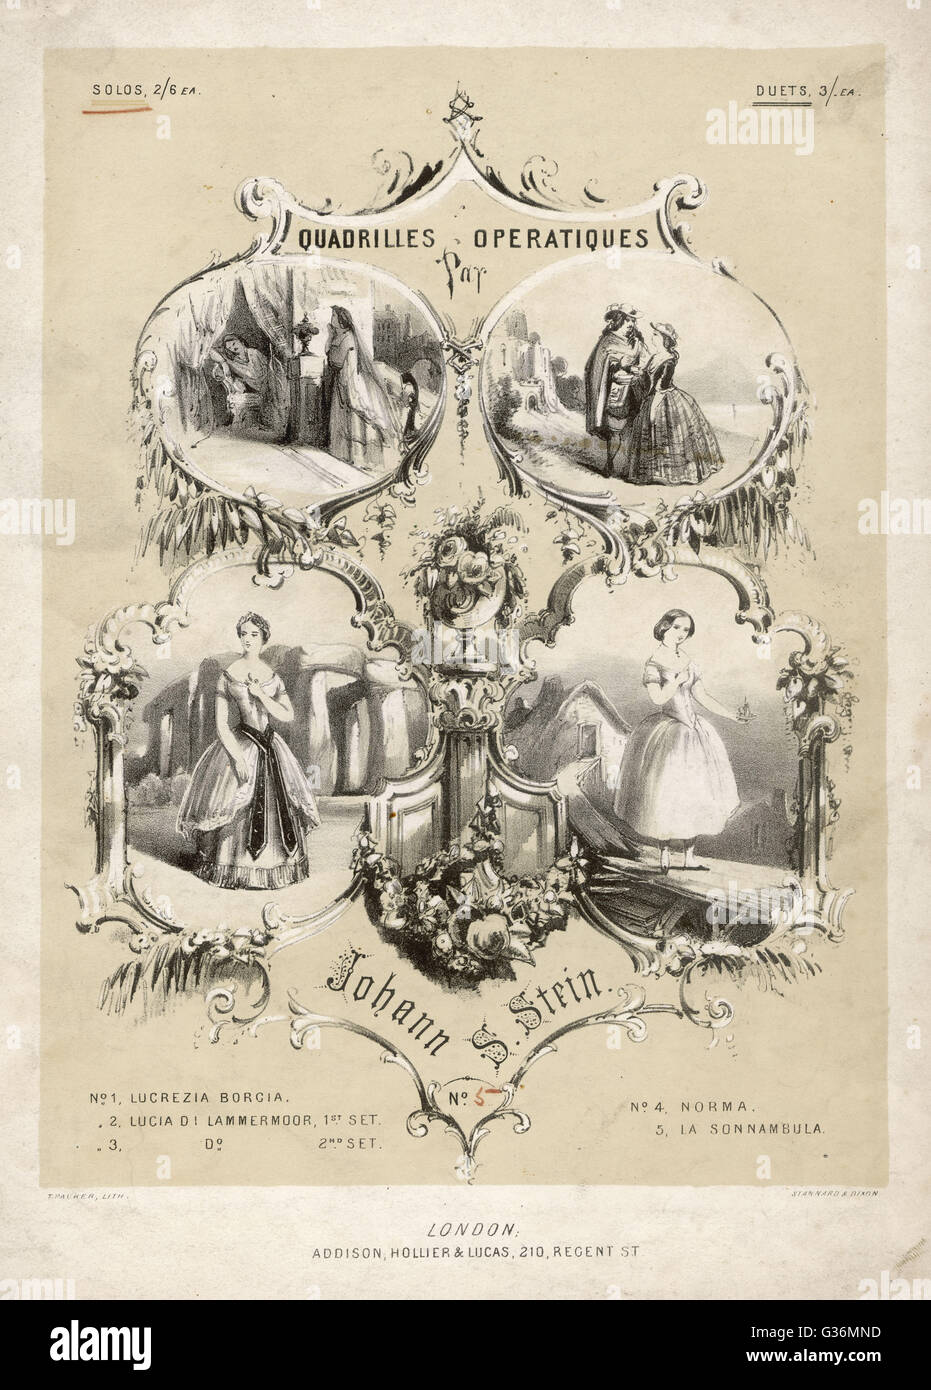 19th century opera quadrilles Stock Photo